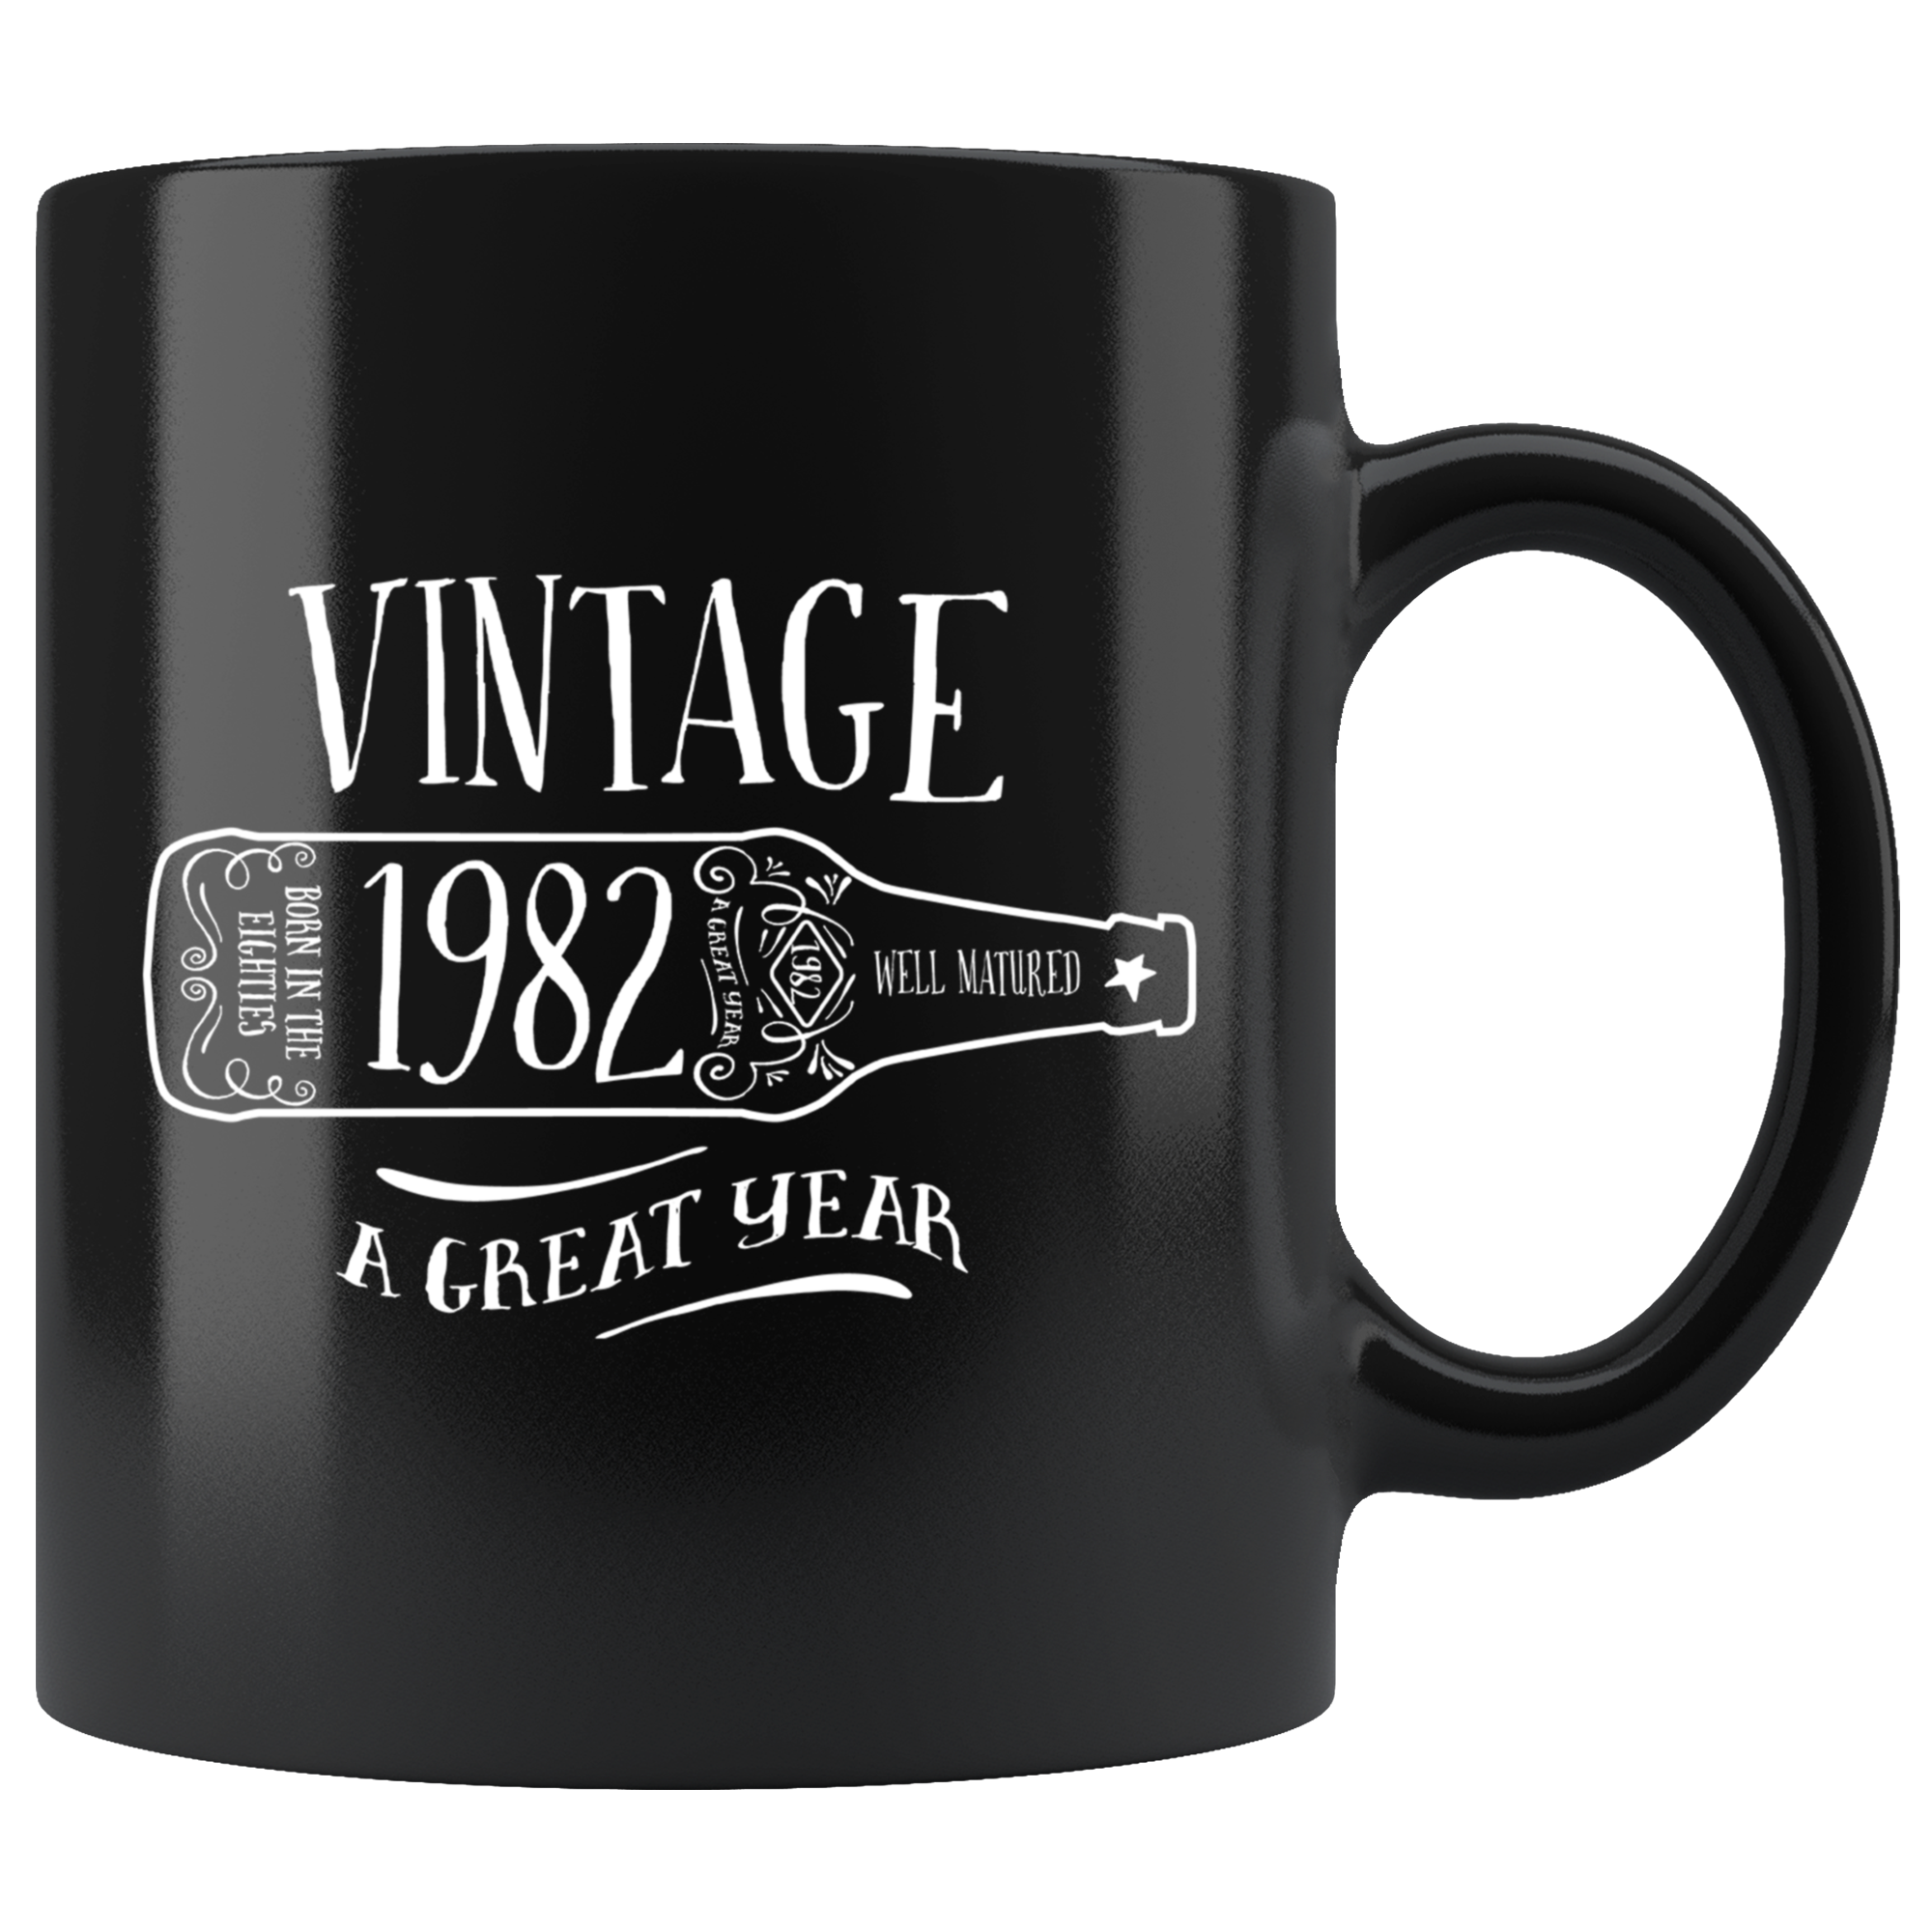 Vintage 1982 - Black Mug